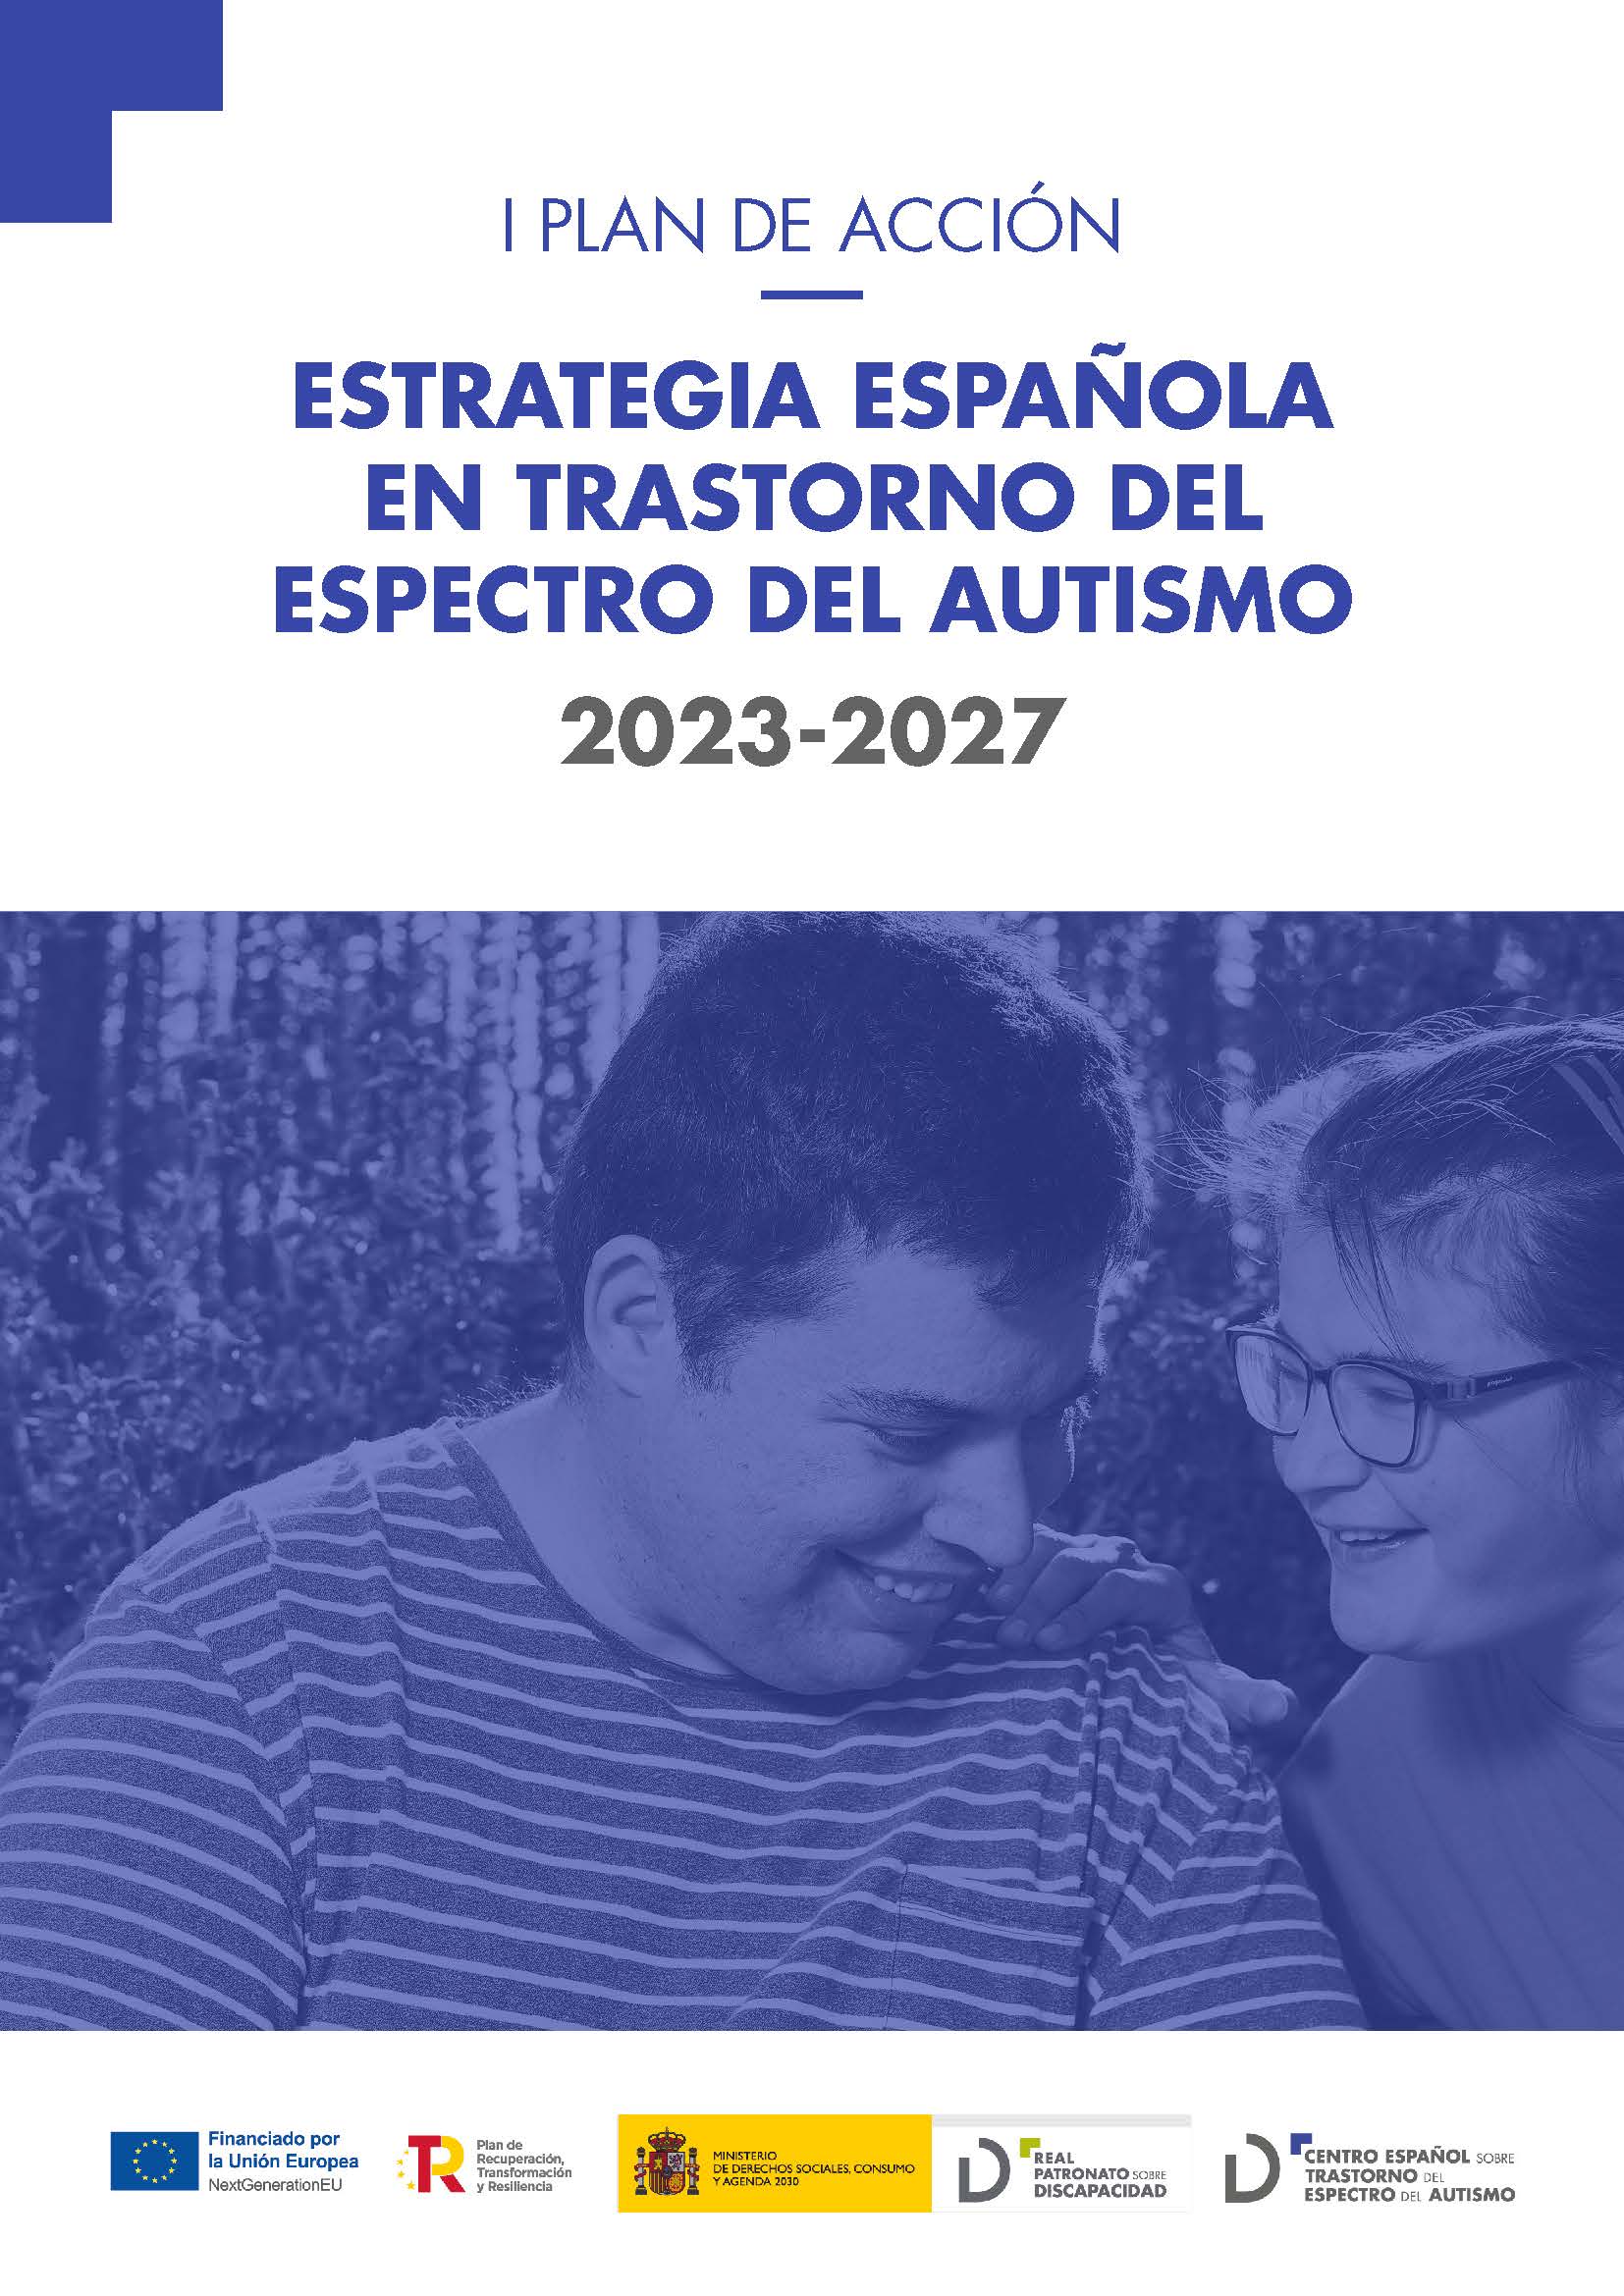 Noticia I Plan de Acción resultado de la Estrategia Española en Trastornos del Espectro del Autismo